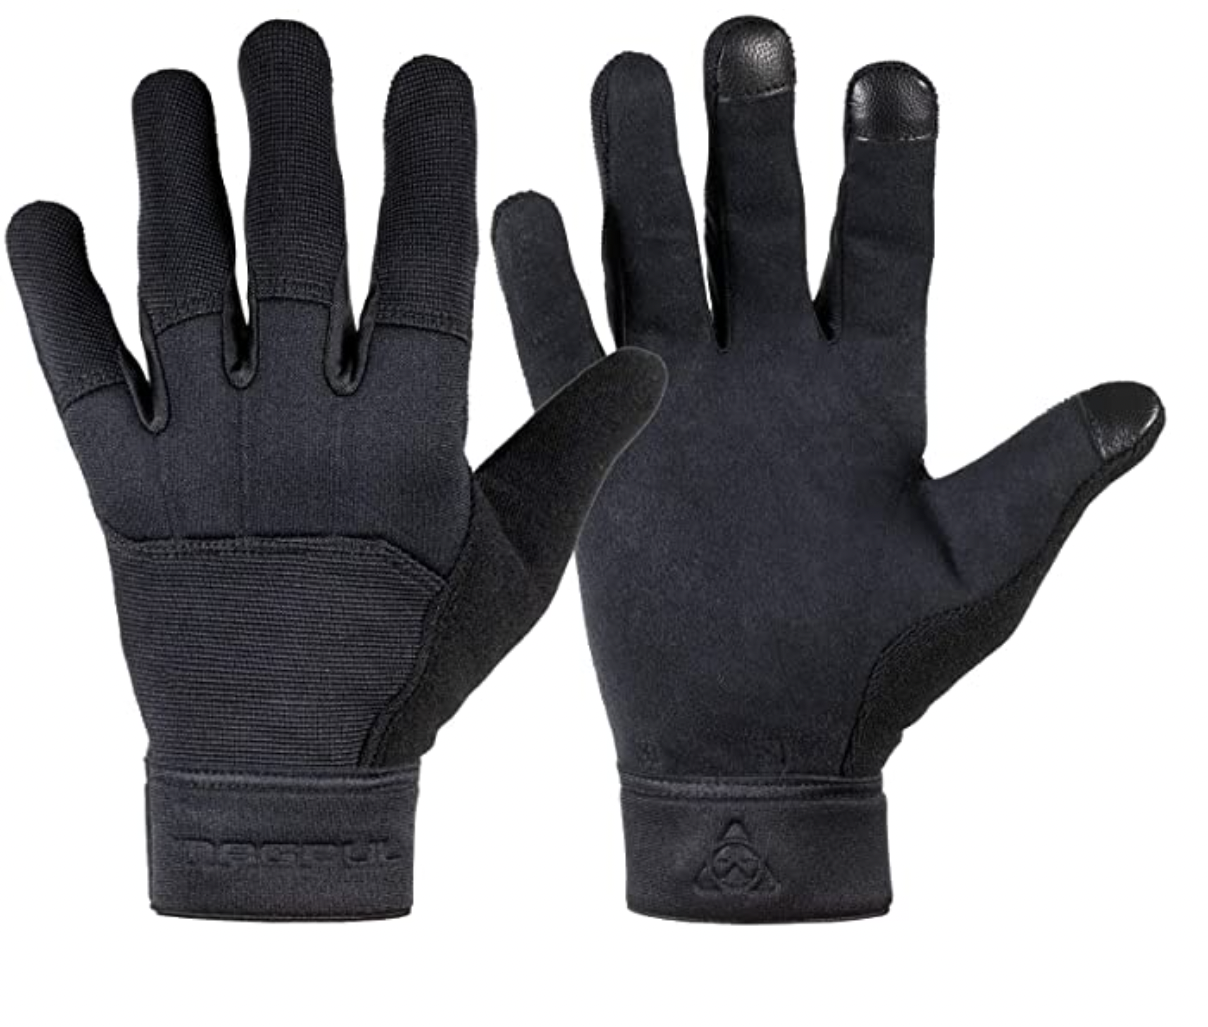 Best Tachnical glove